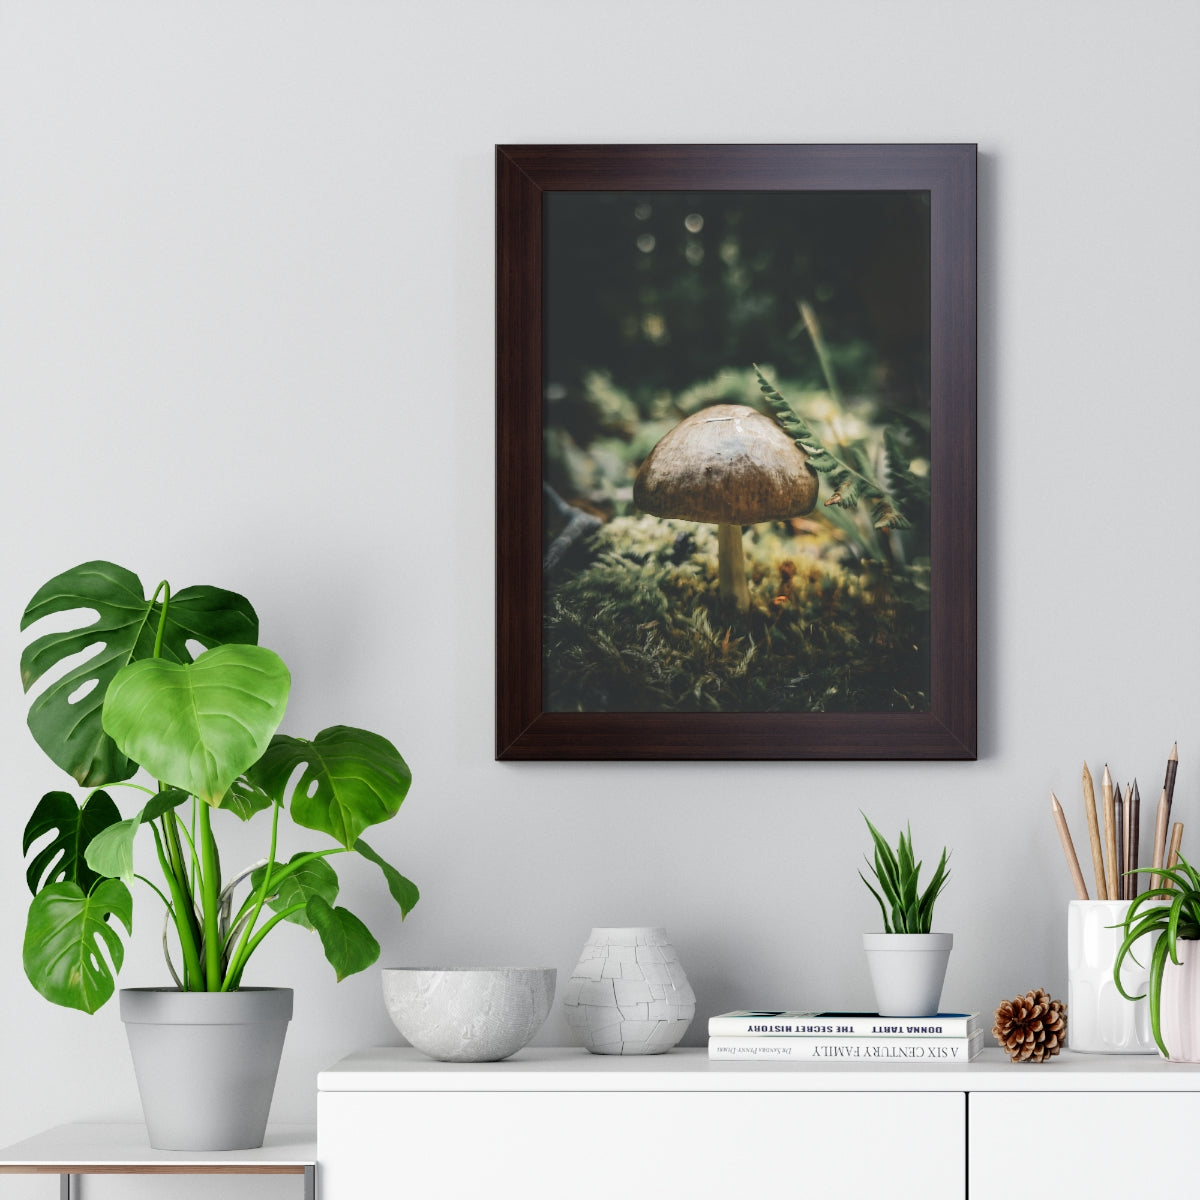 Mossy Mushroom House Framed Matte Print